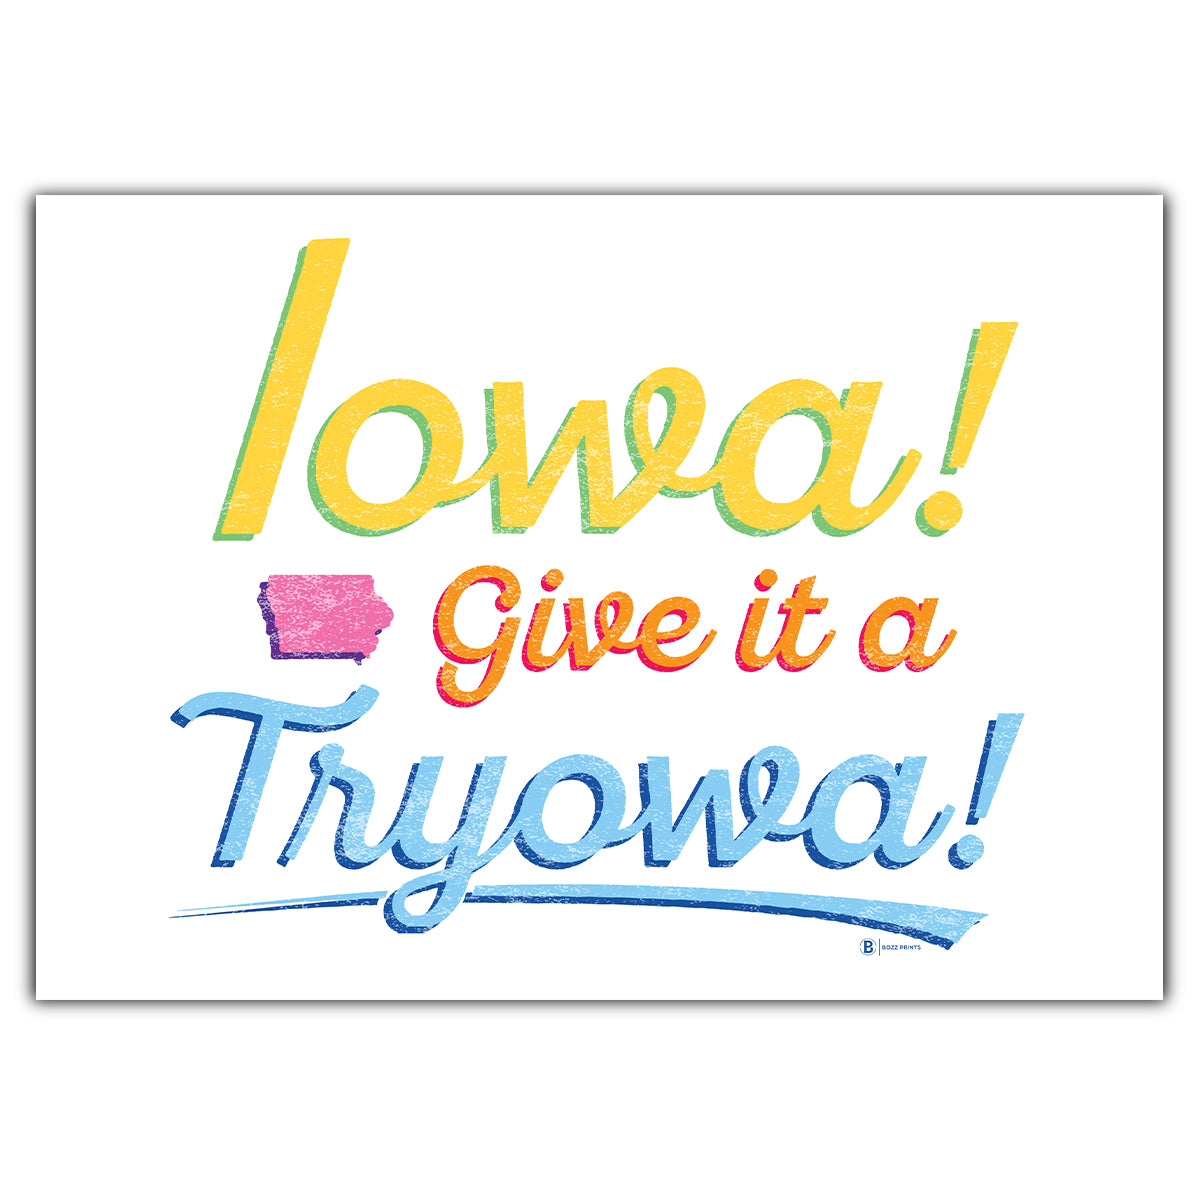 Iowa! Give it a Tryowa! White Greeting Card - Bozz Prints